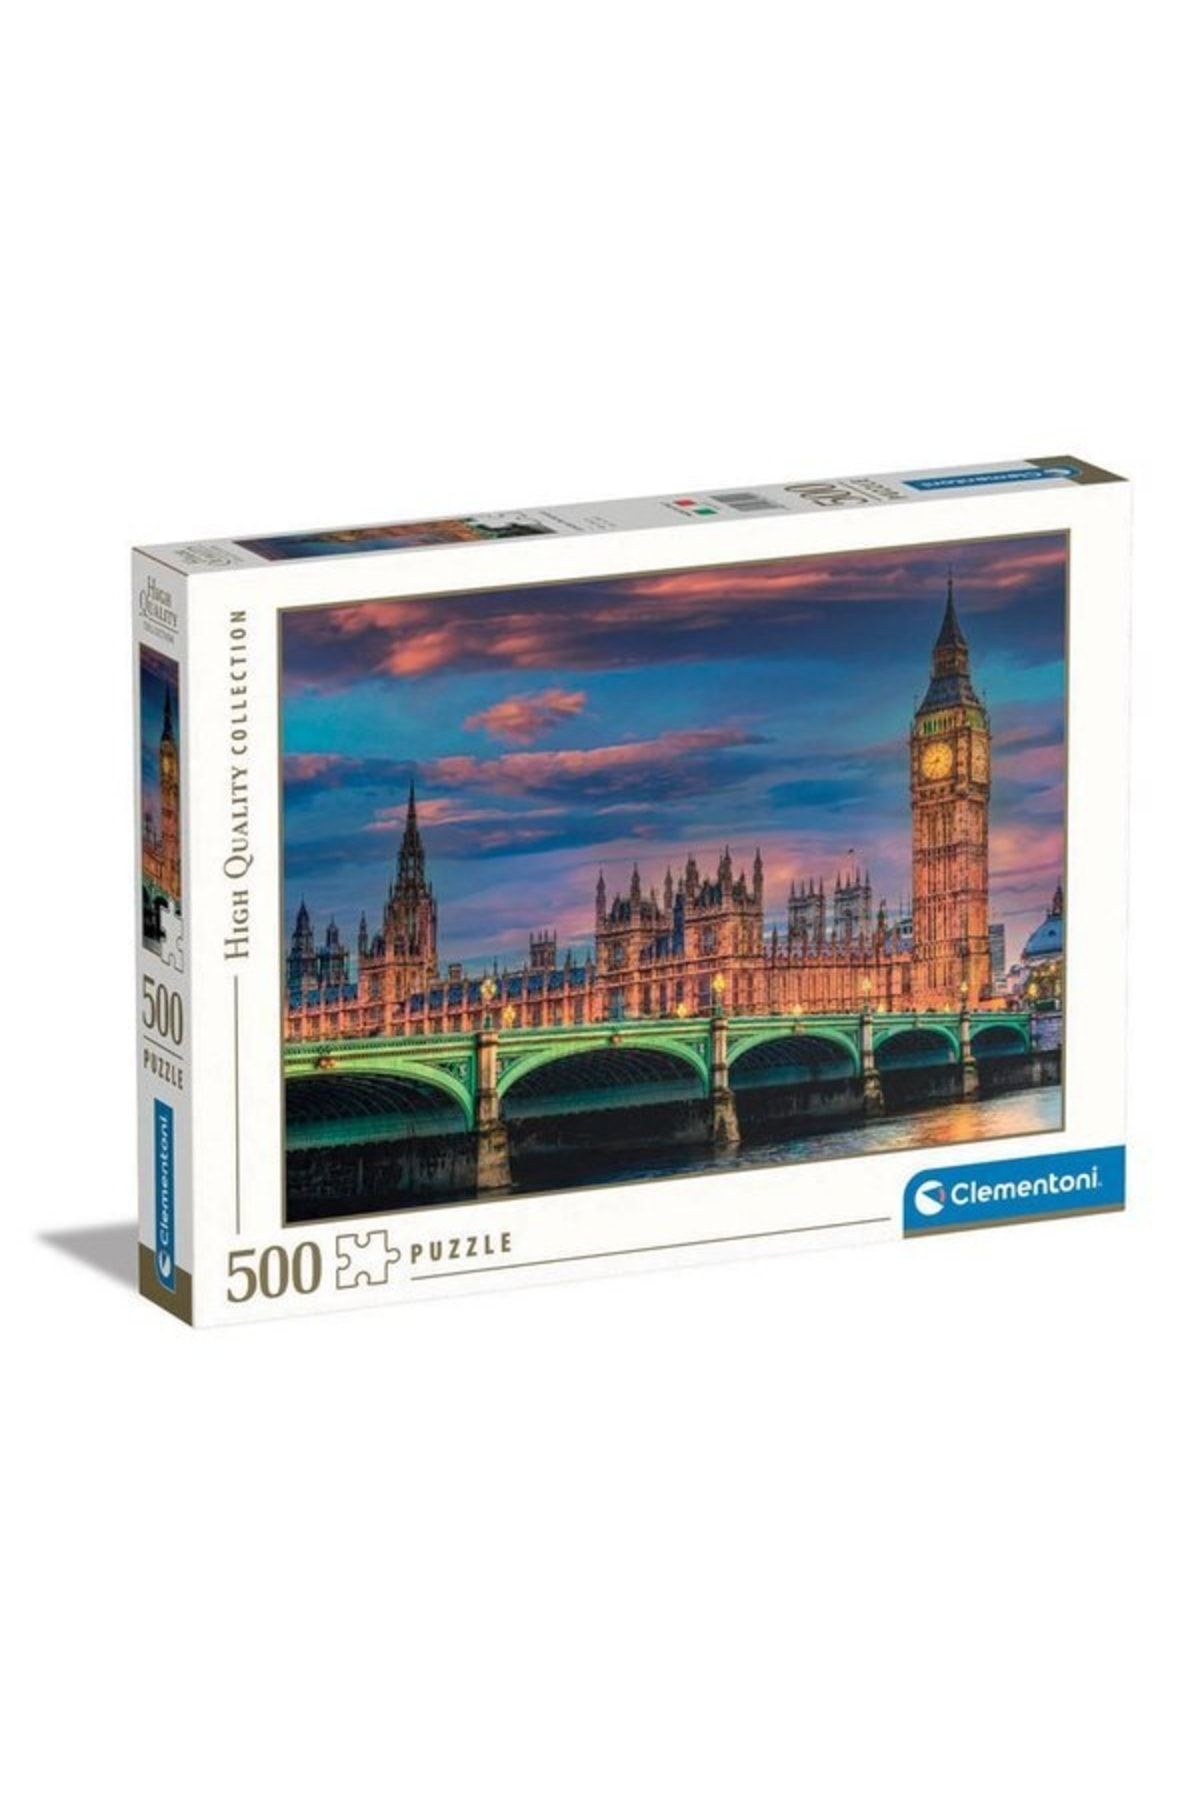 Clementoni Cle-puz.500 The London Parliament 35112